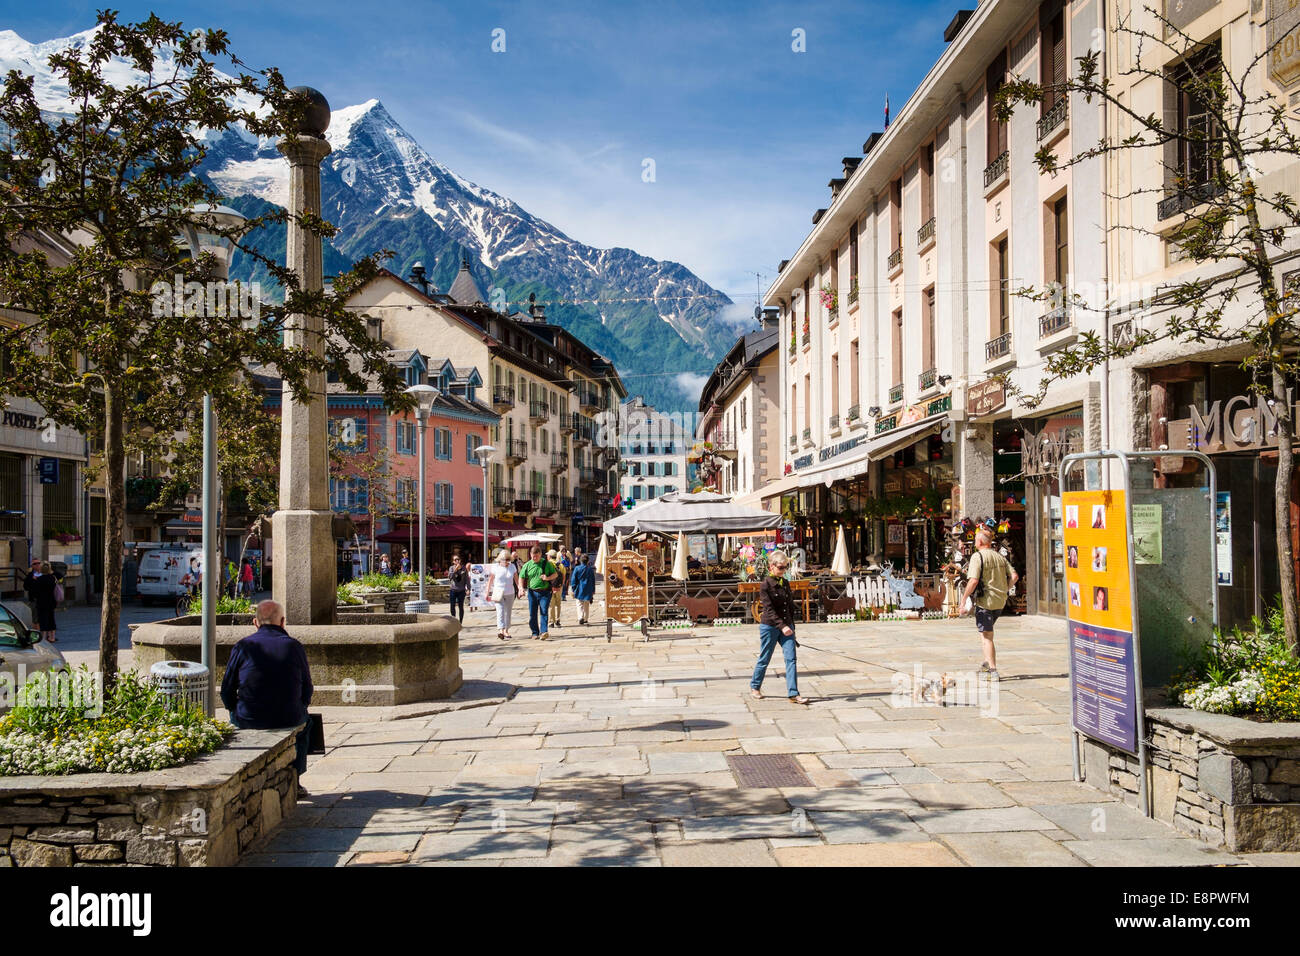 Le centre-ville de Chamonix, Alpes, France, Europe - avec le Mont Blanc derrière en été Banque D'Images